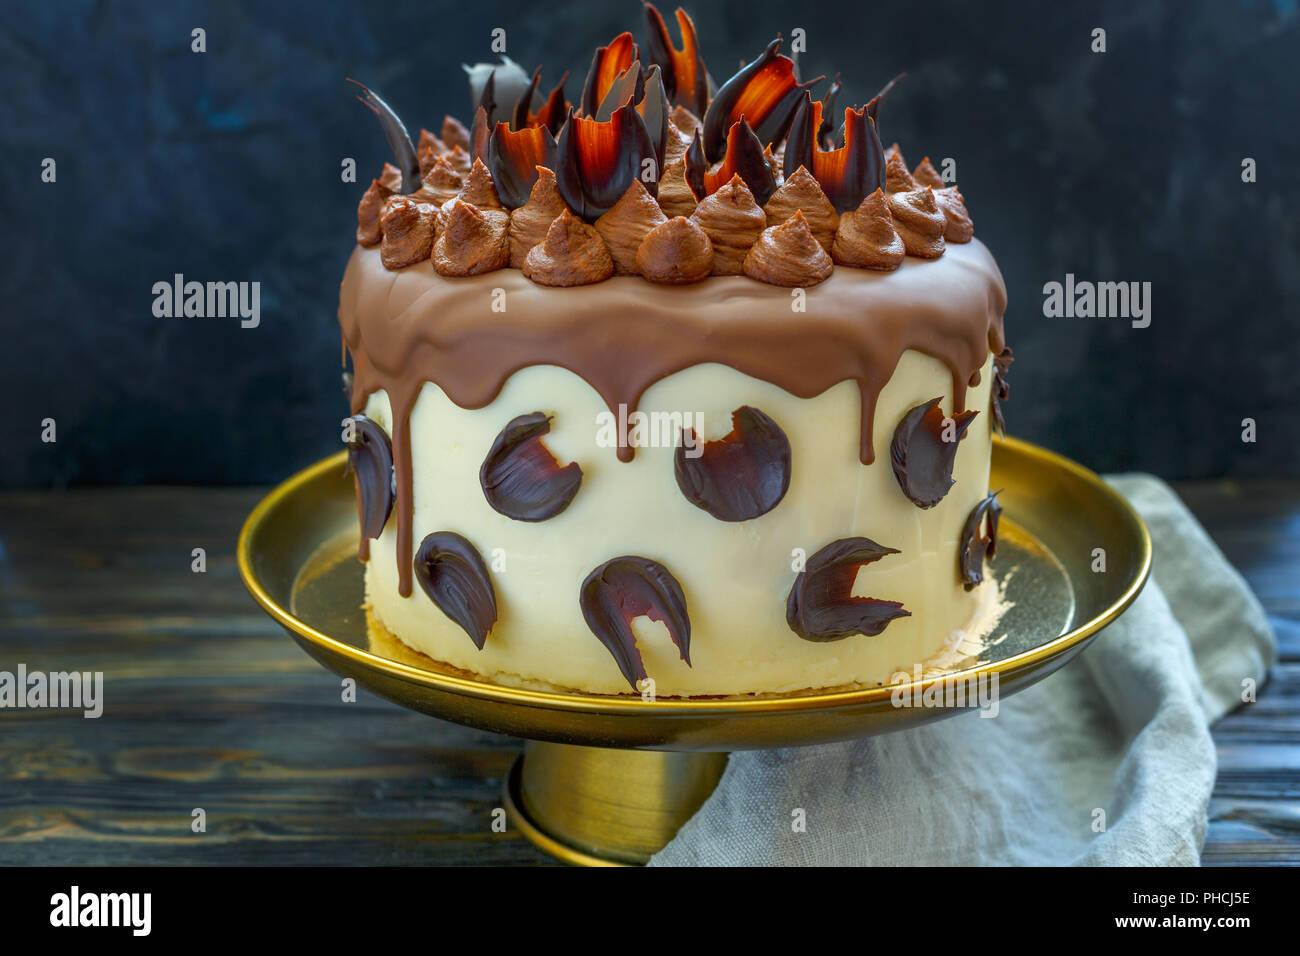 Torte mit Schokolade Dekor. Stockfoto